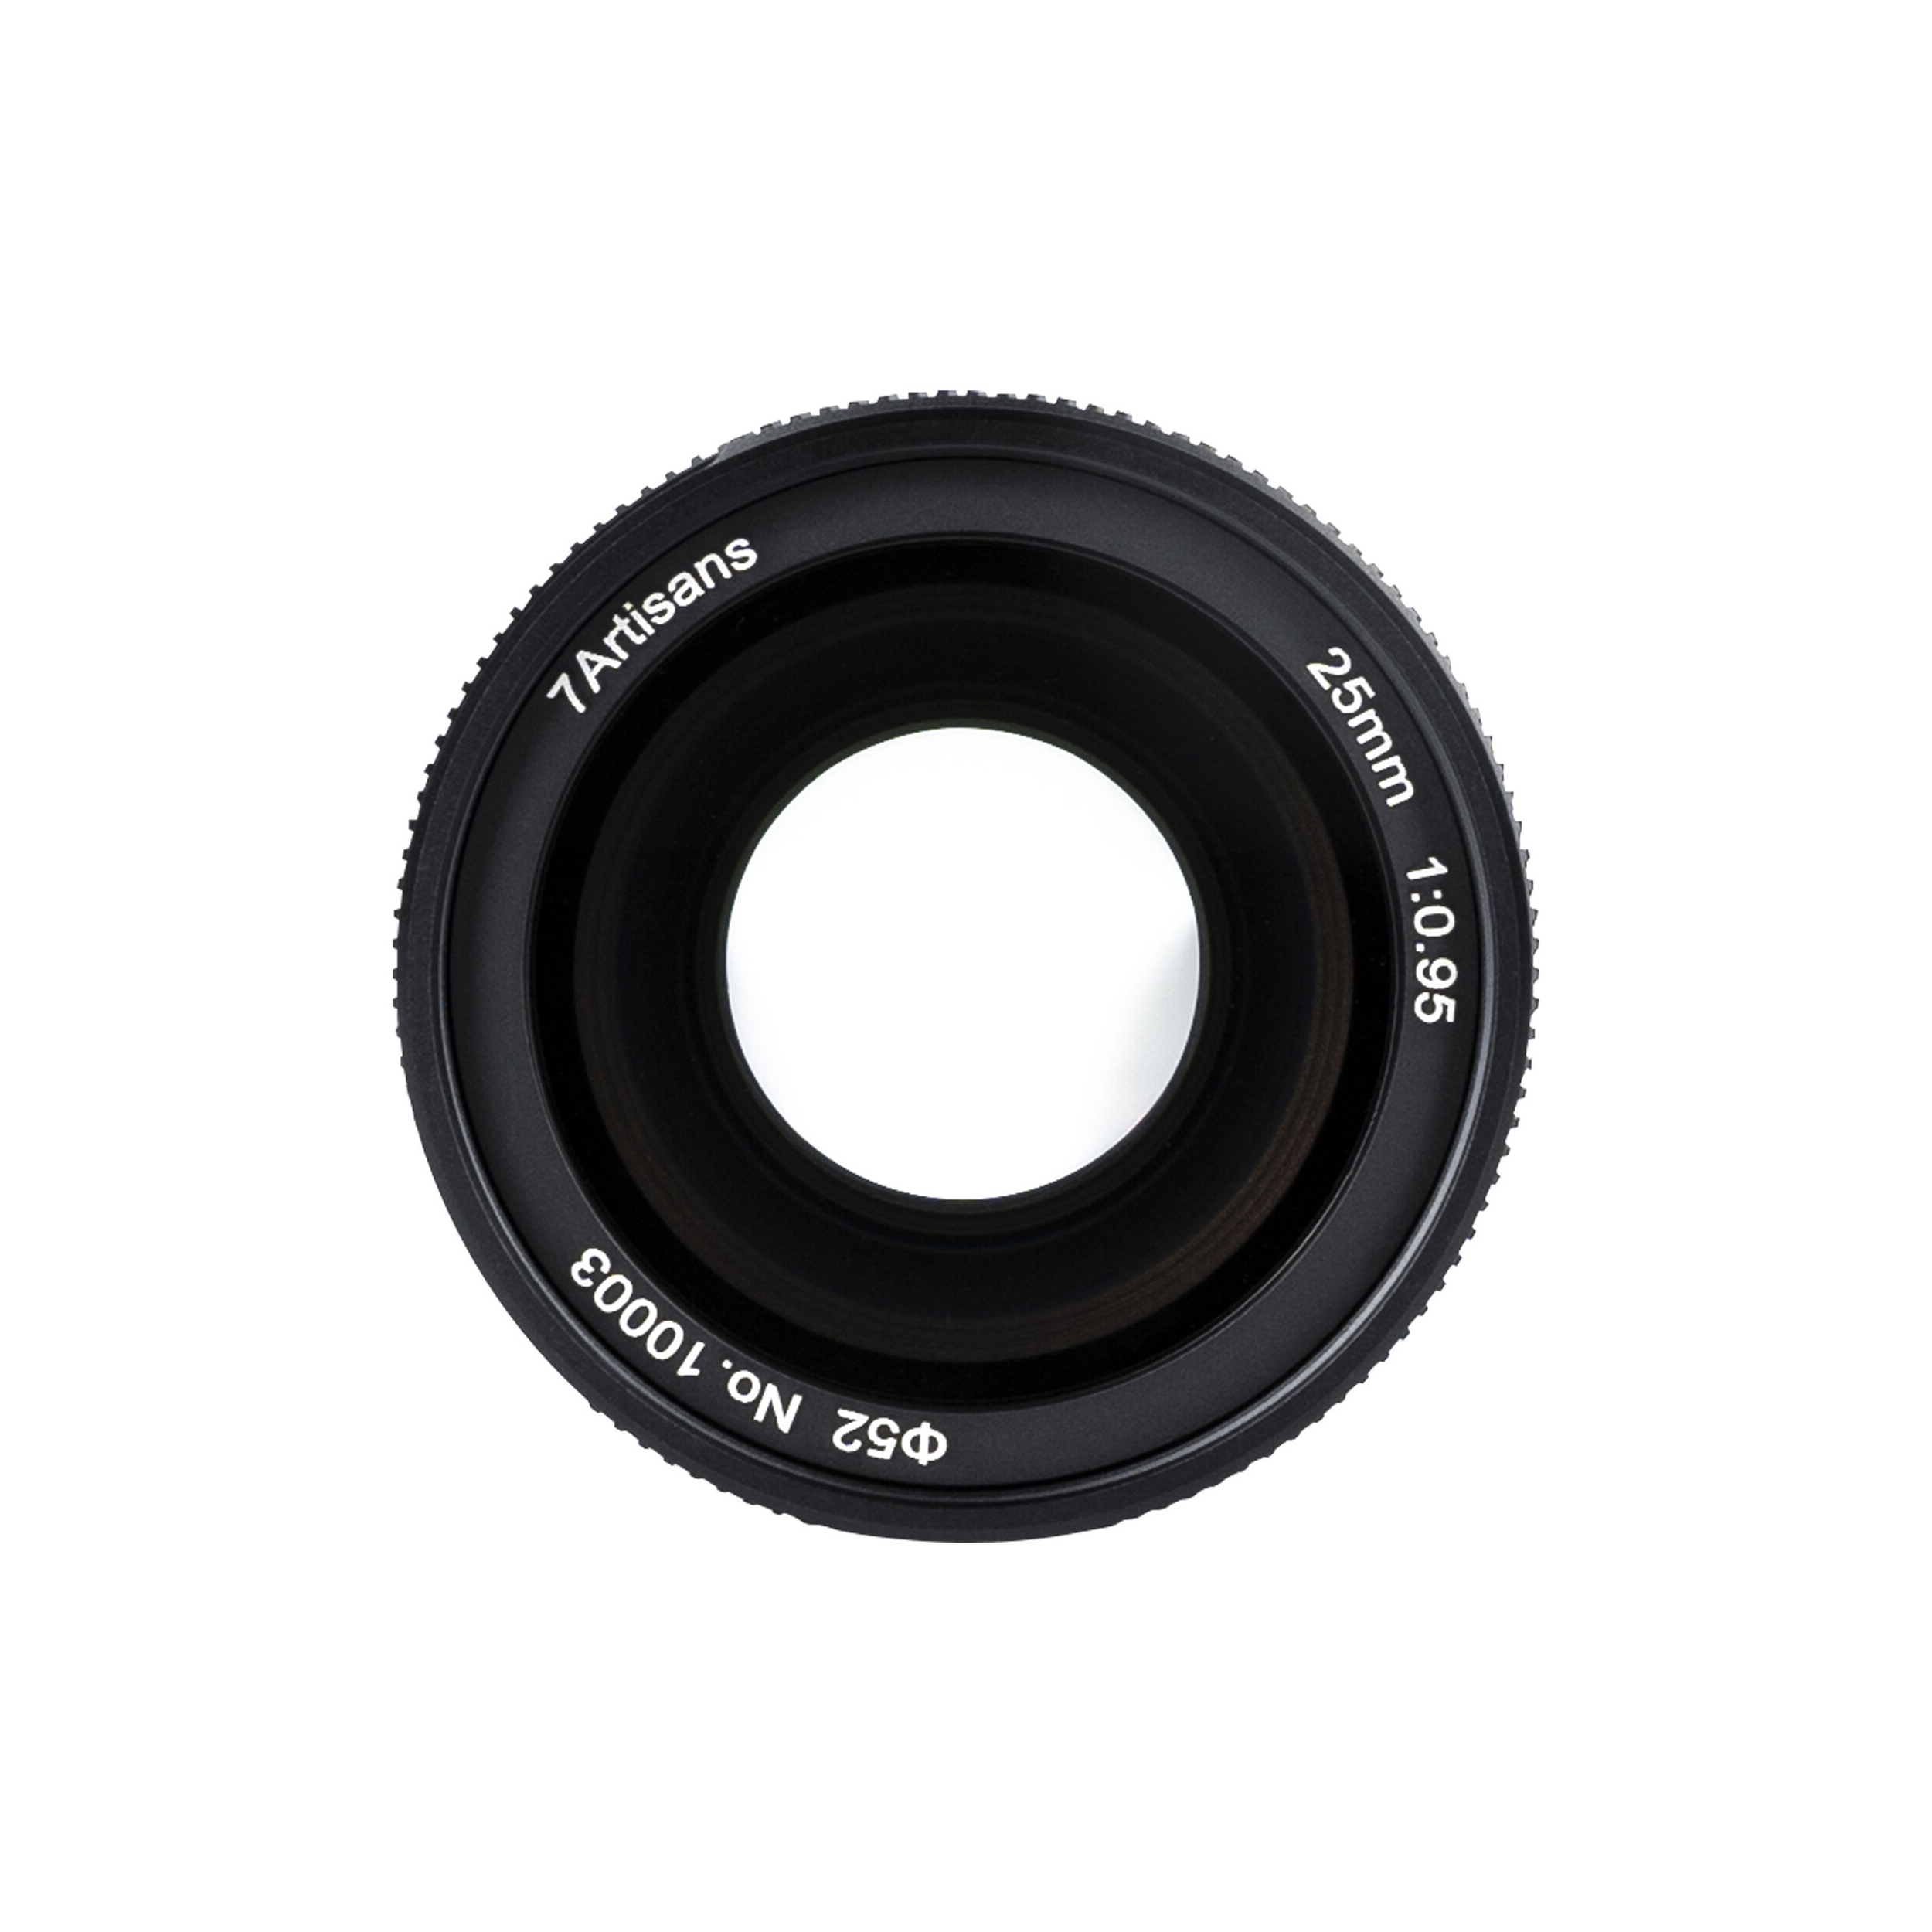 7artisans photoélectrique 25 mm f / 0,95 objectif pour le support Sony E